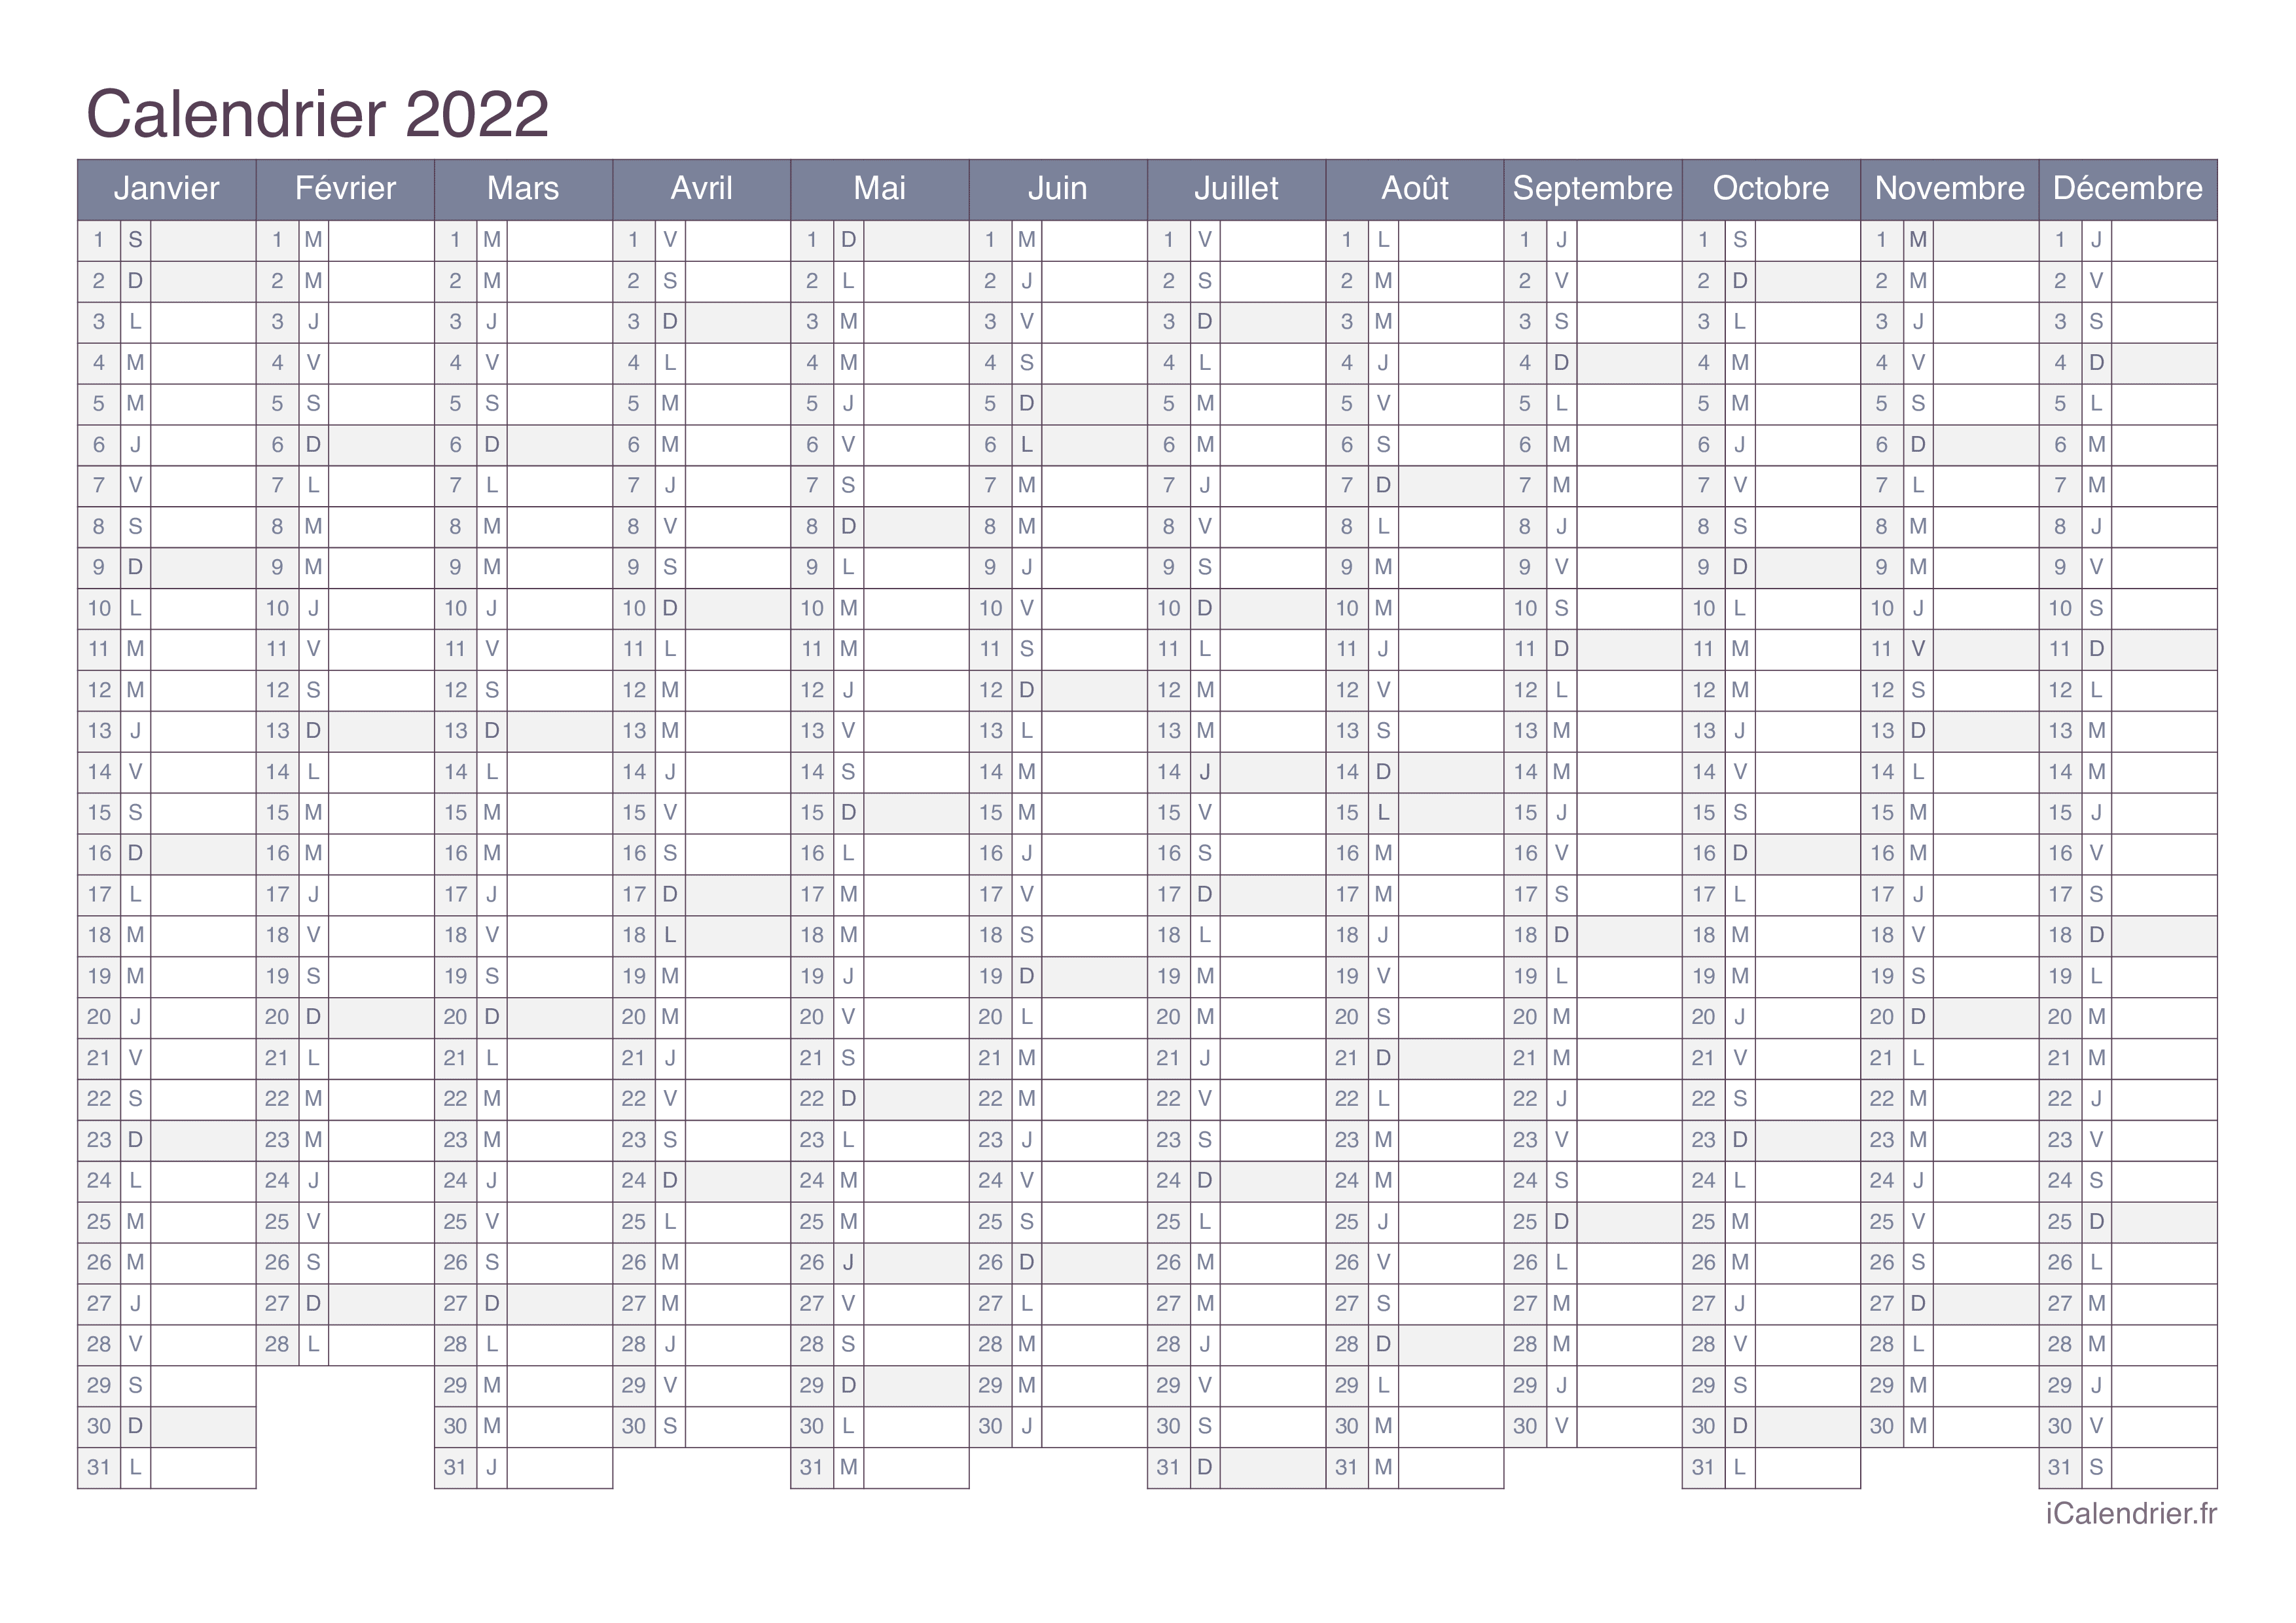 Calendrier 2022 à Imprimer Pdf Calendrier 2022 à imprimer PDF et Excel   iCalendrier